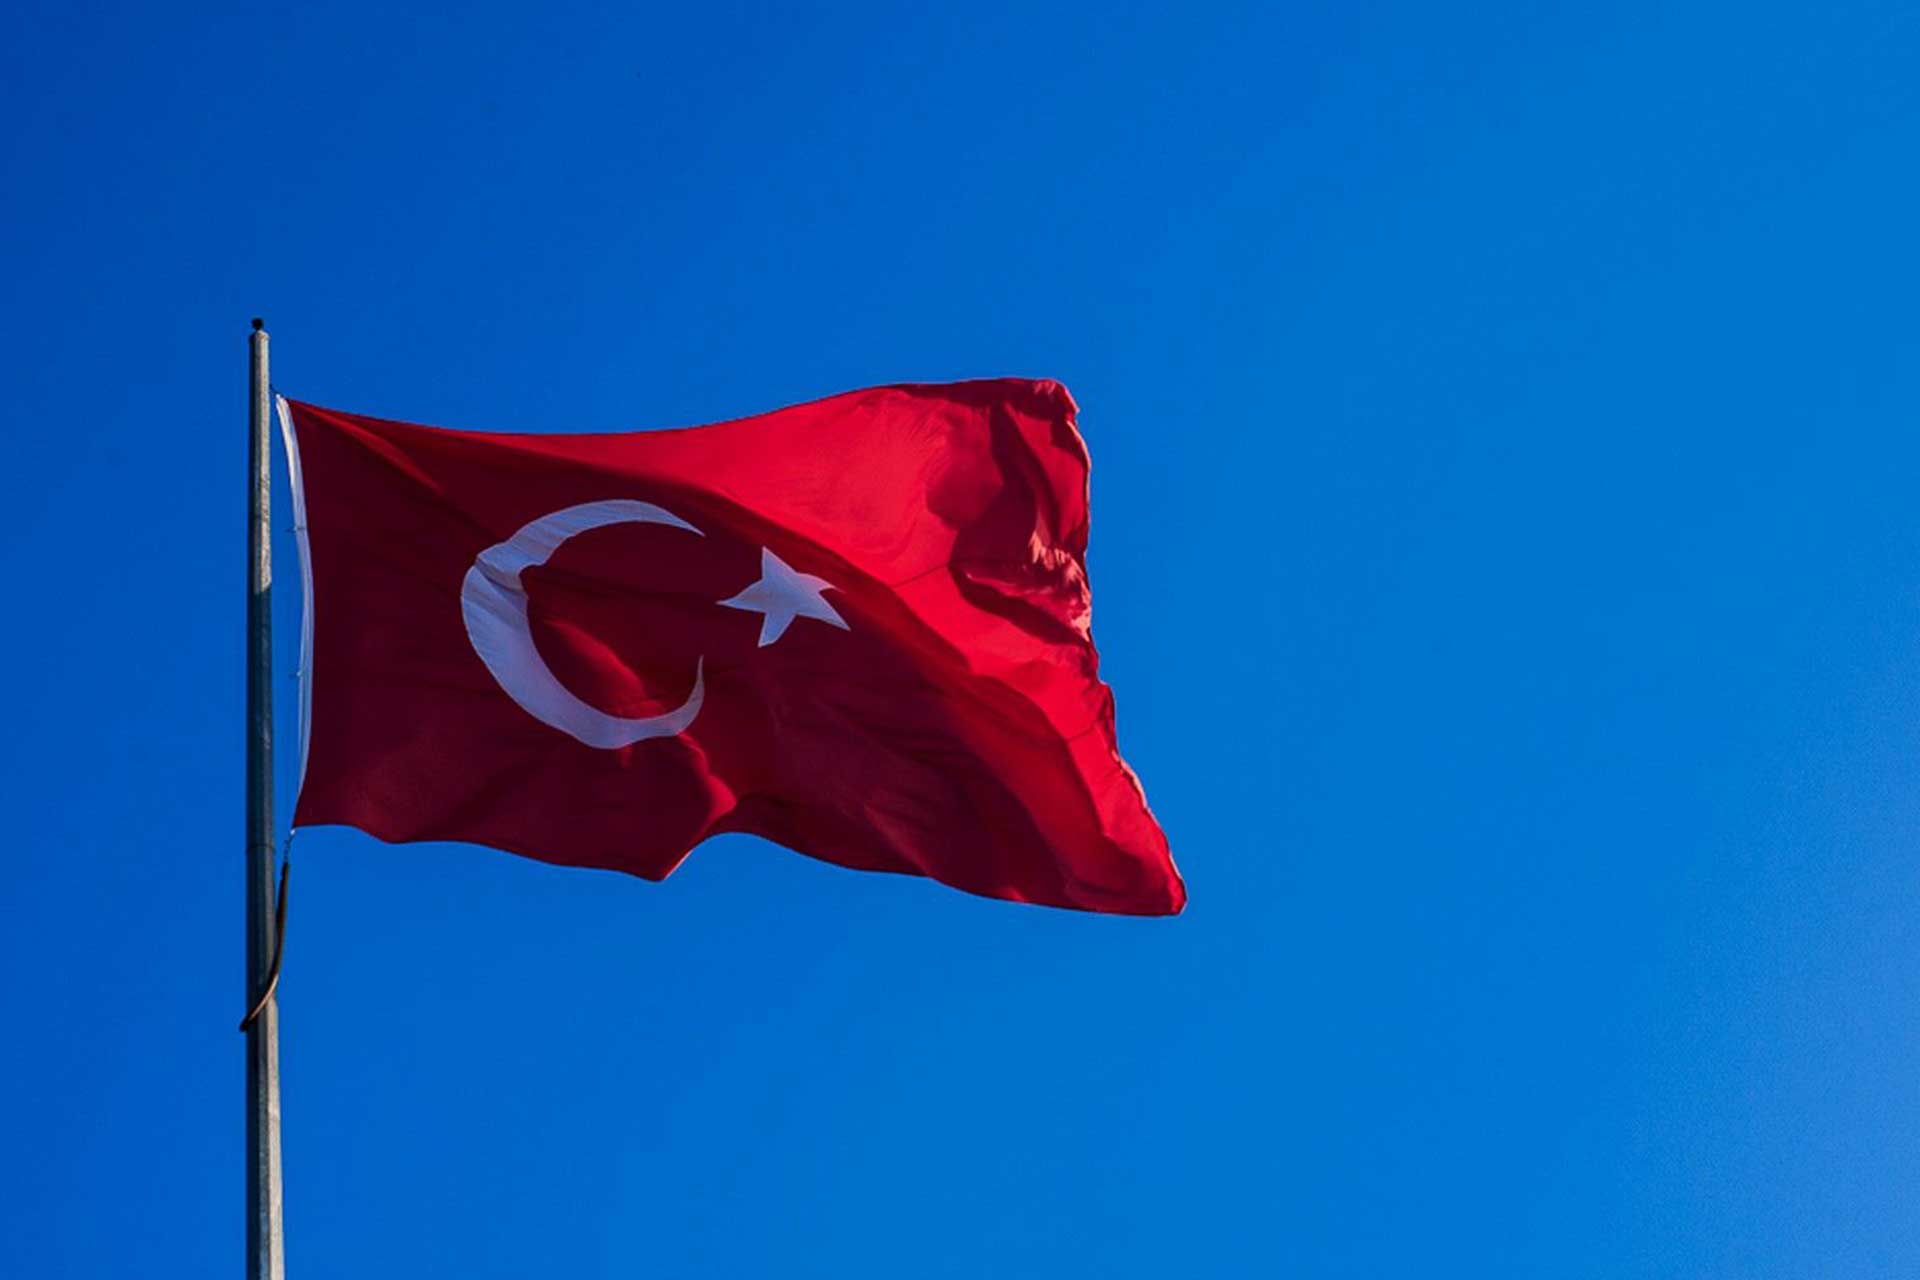 turk bayragi resimleri 2019 15